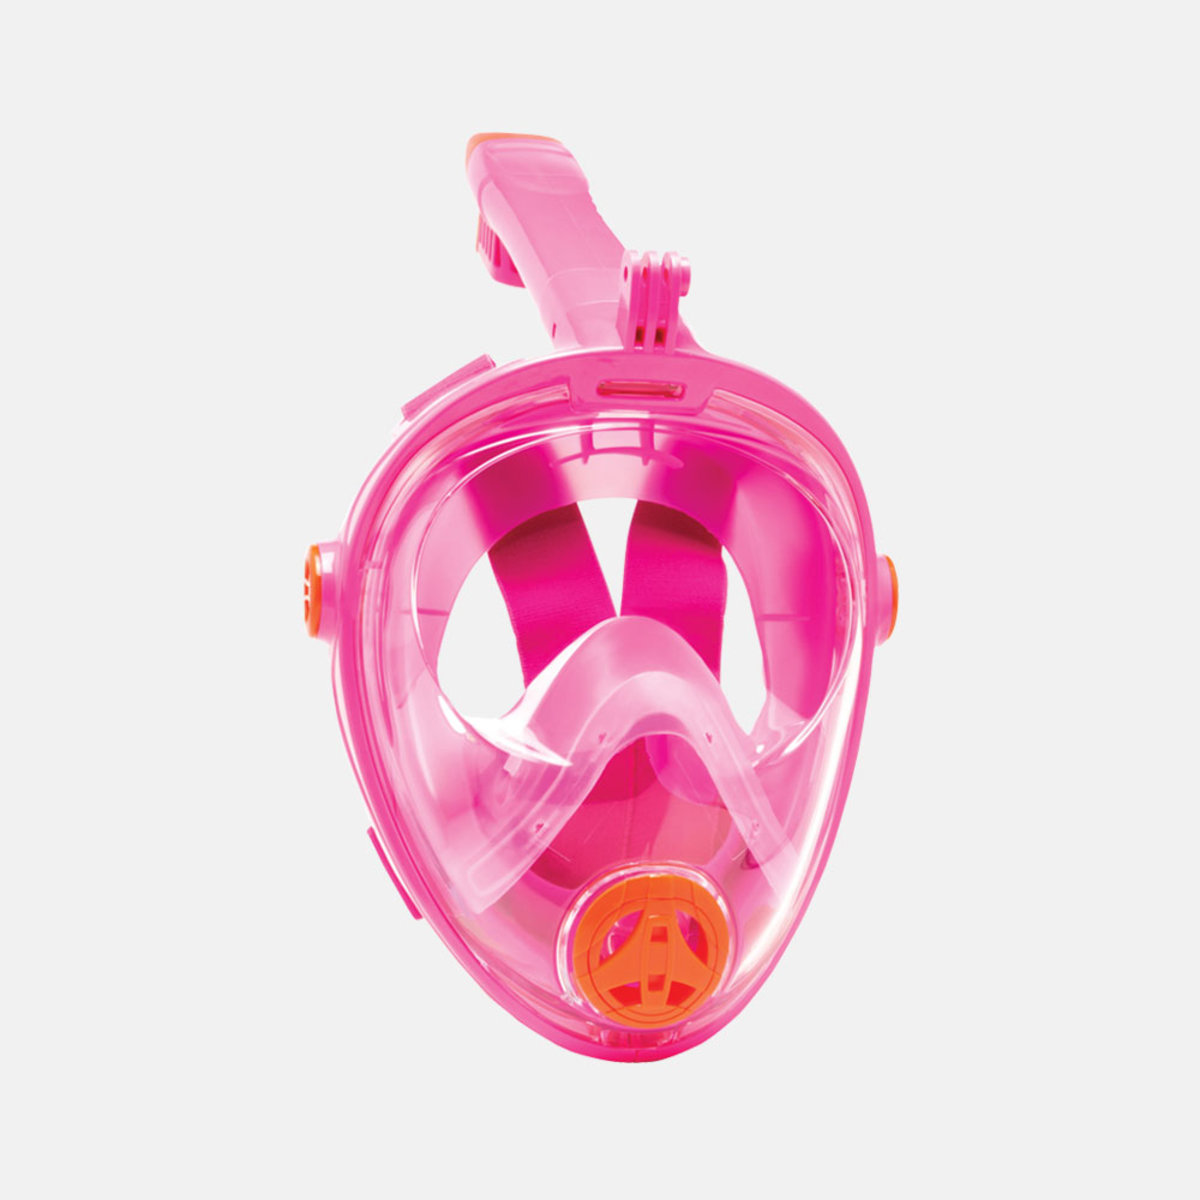 Snorkel Mask JR. for child